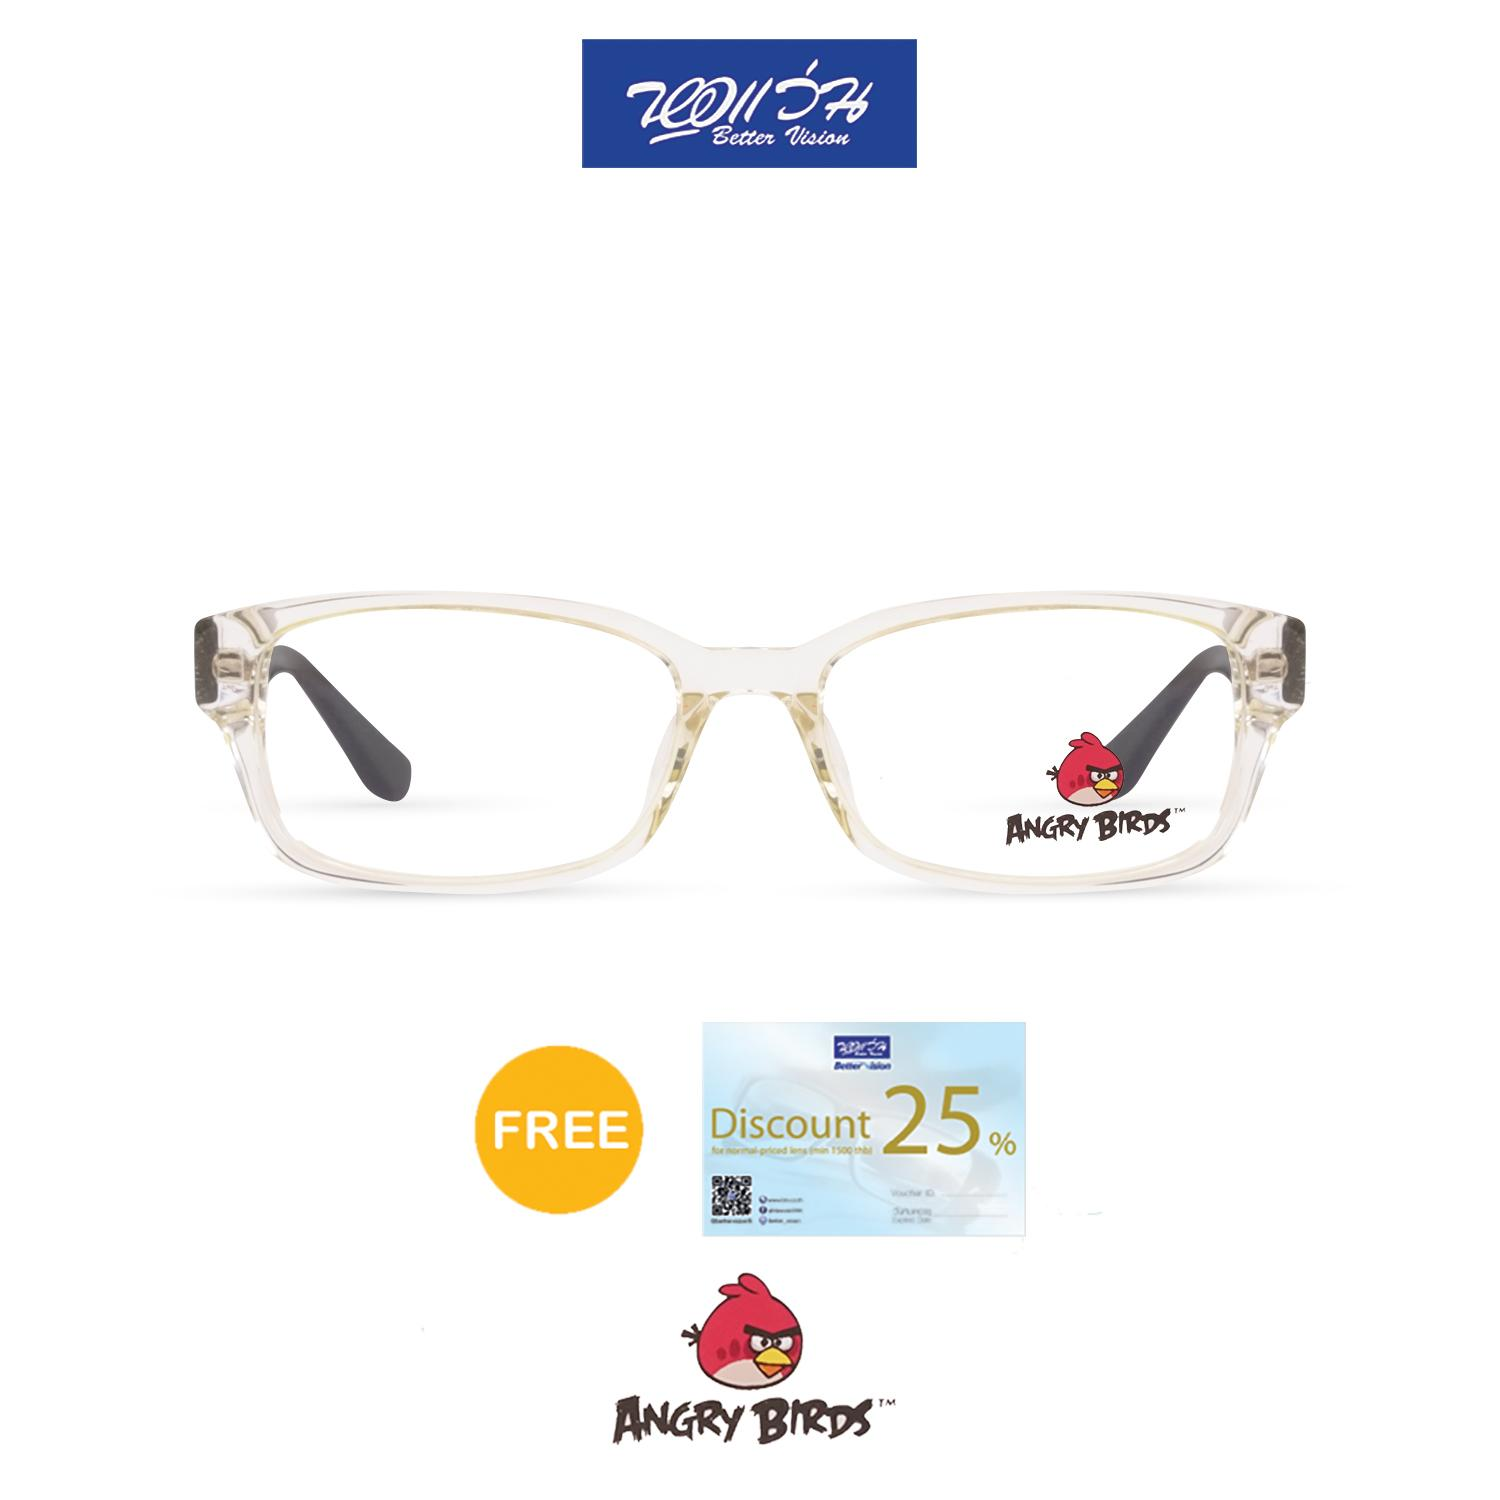 กรอบแว่นตาเด็ก แองกี้ เบิร์ด ANGRY BIRDS Child glasses แถมฟรีส่วนลดค่าตัดเลนส์ 25%  free 25% lens discount รุ่น FAG12105 สี CRYSTAL CREAM